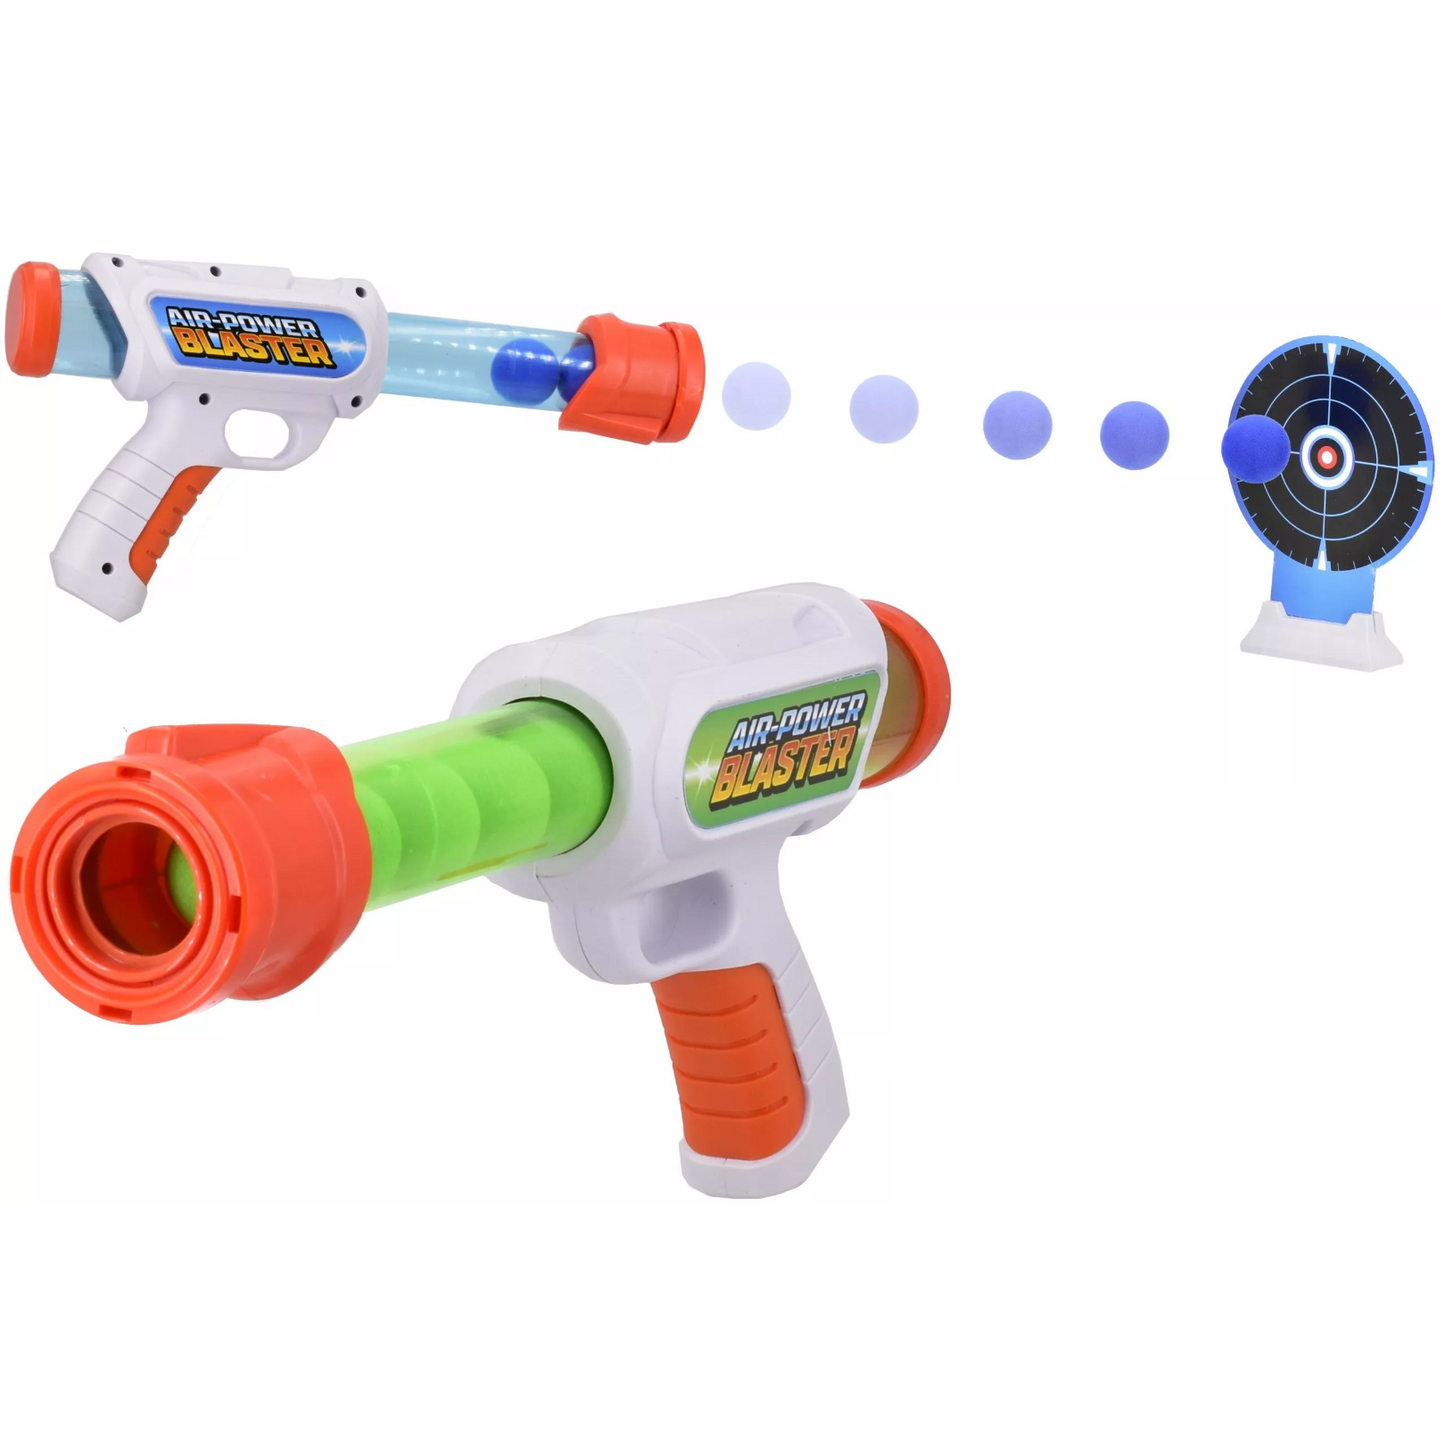 Toys N Tuck:Target Shooting Game,Kandy Toys